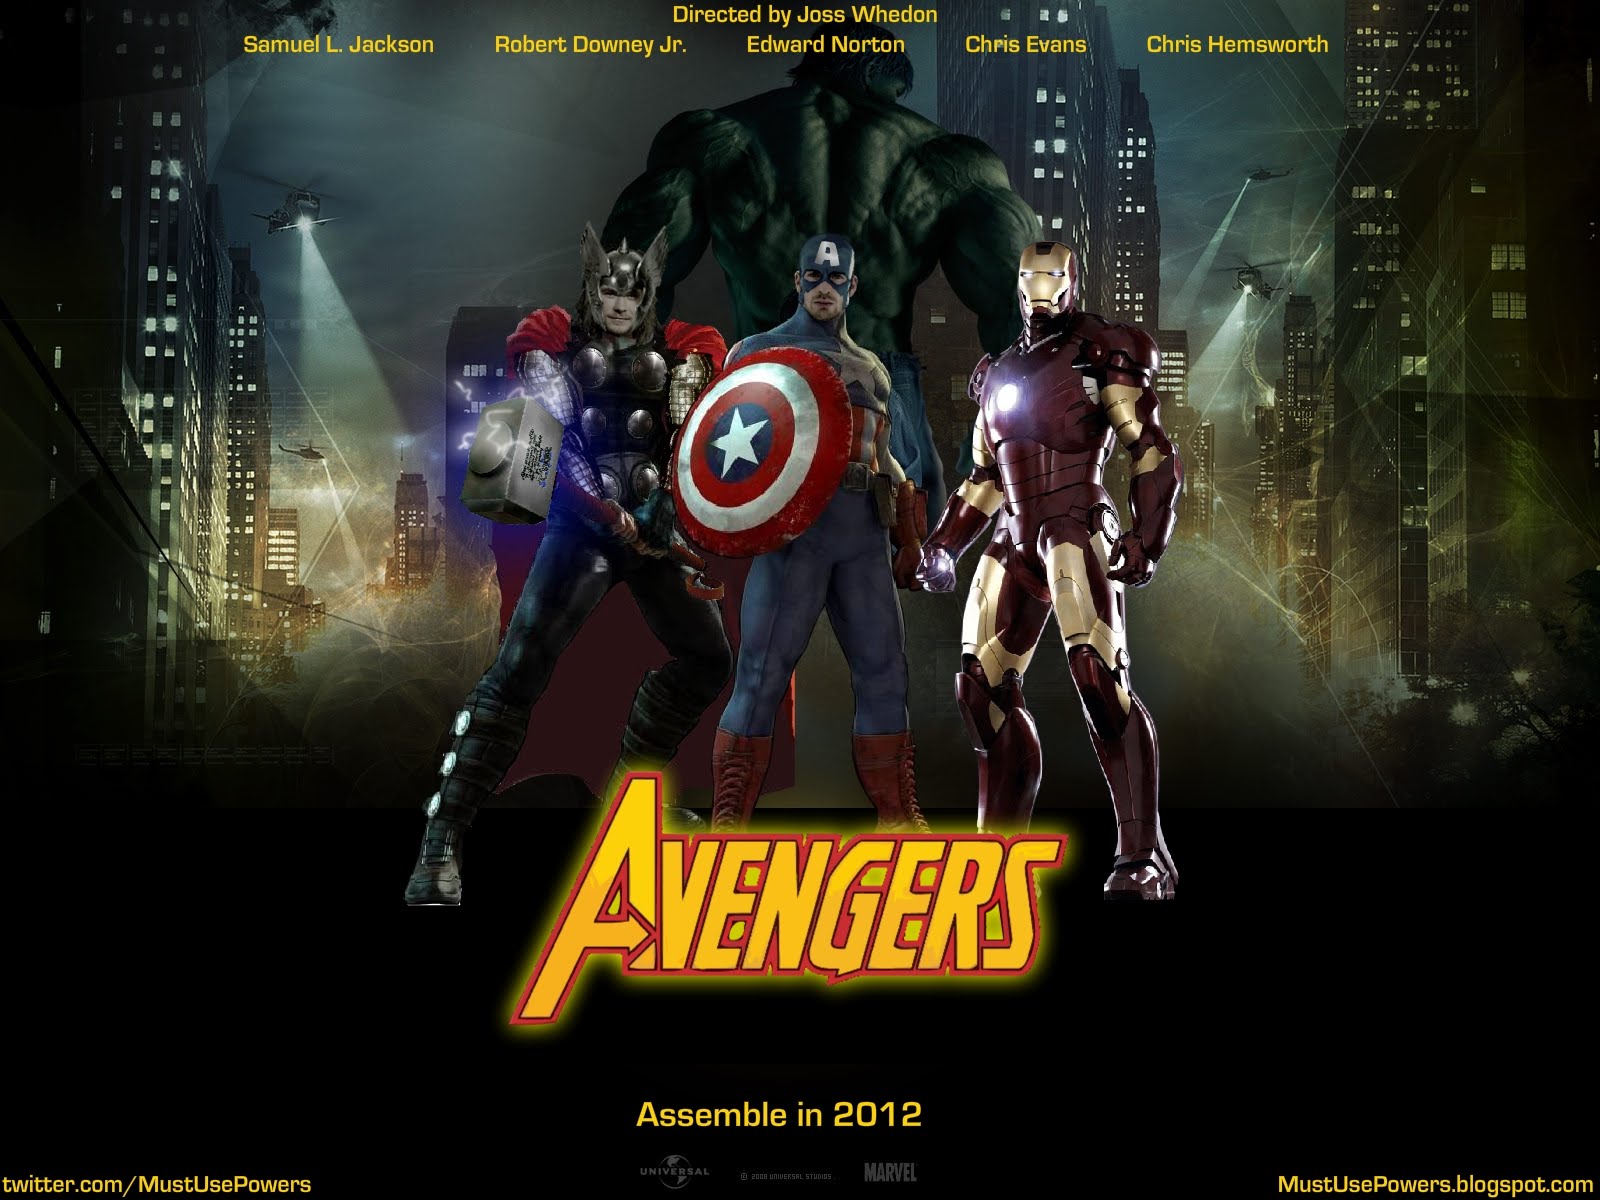 http://1.bp.blogspot.com/-IHEtygUYqqA/T7NqFlZn4iI/AAAAAAAAAOw/RECPDT64eac/s1600/Avengers+crosses+the+%25241+billion+mark+worldwide+Just+19+days+%25285%2529.jpg